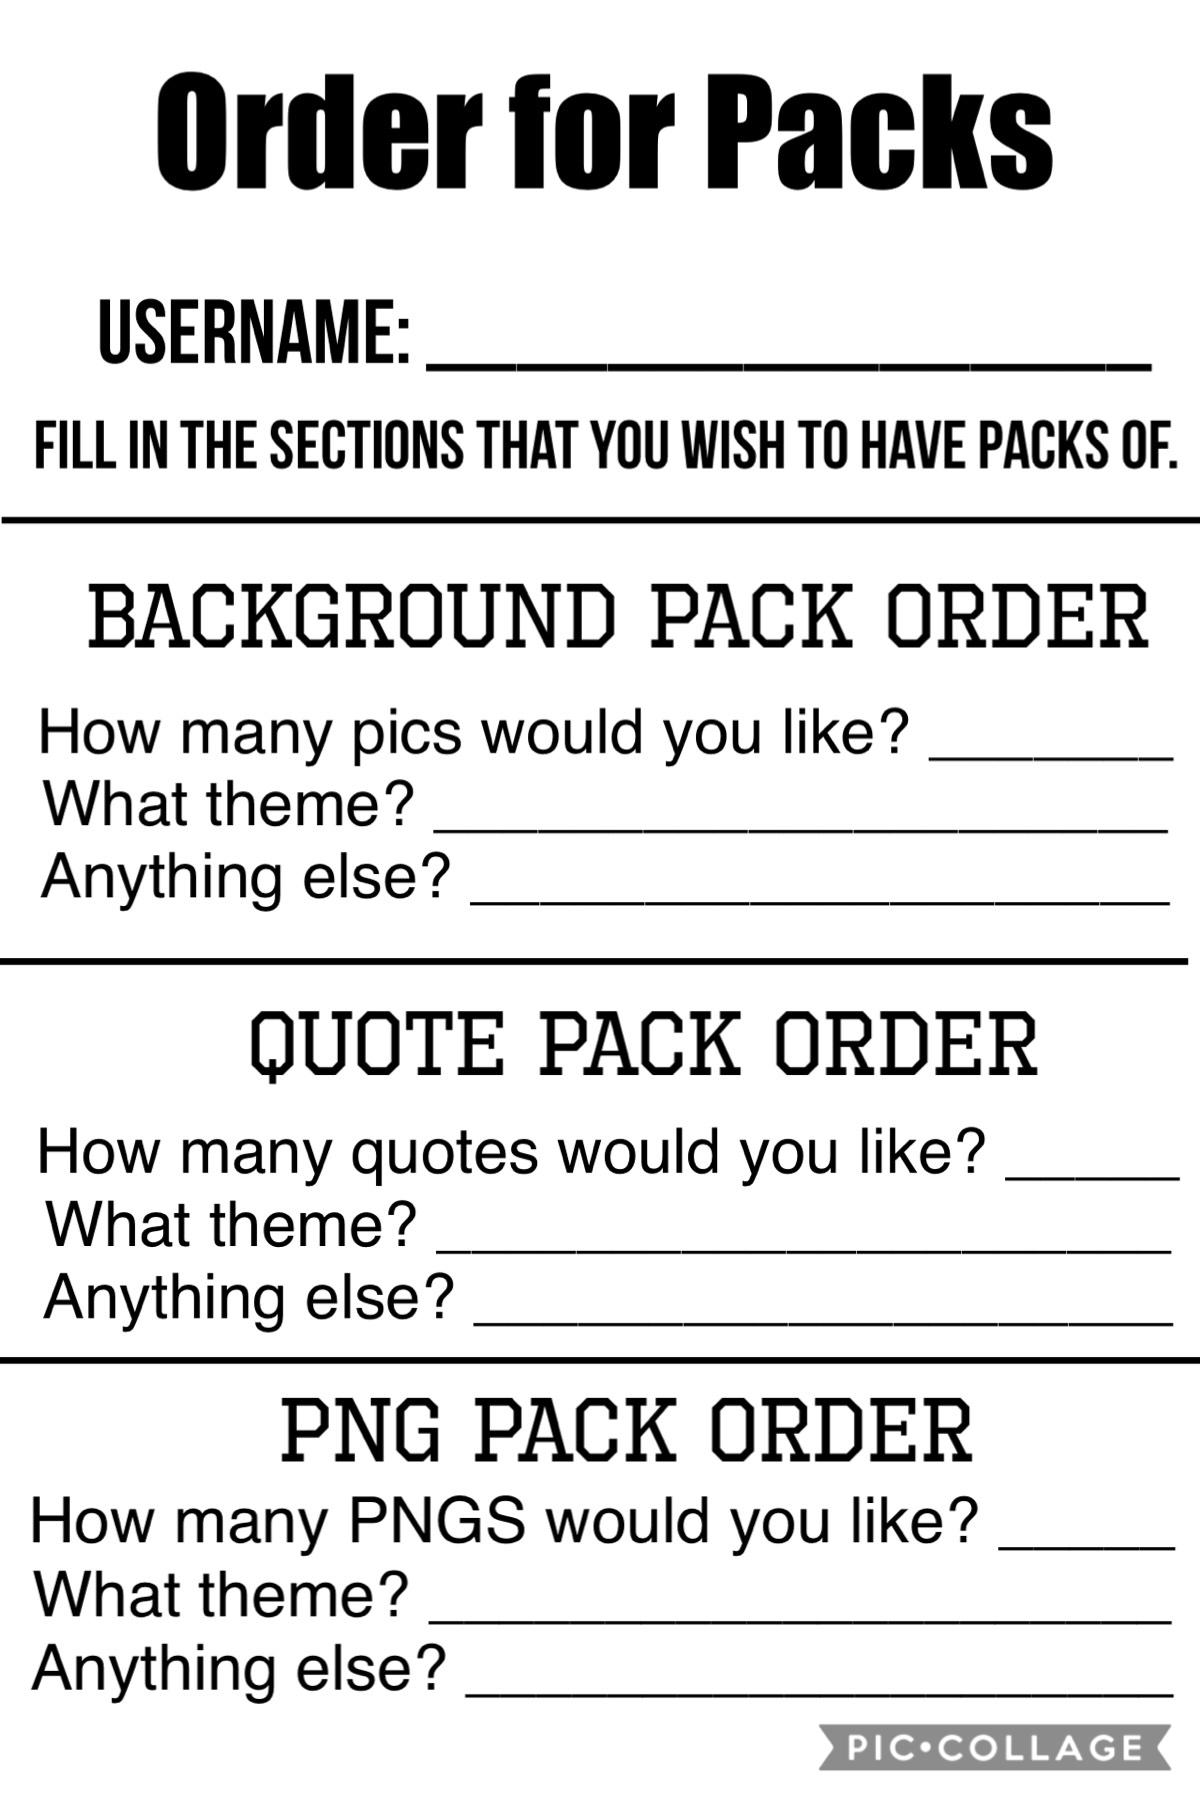 Order for Packs